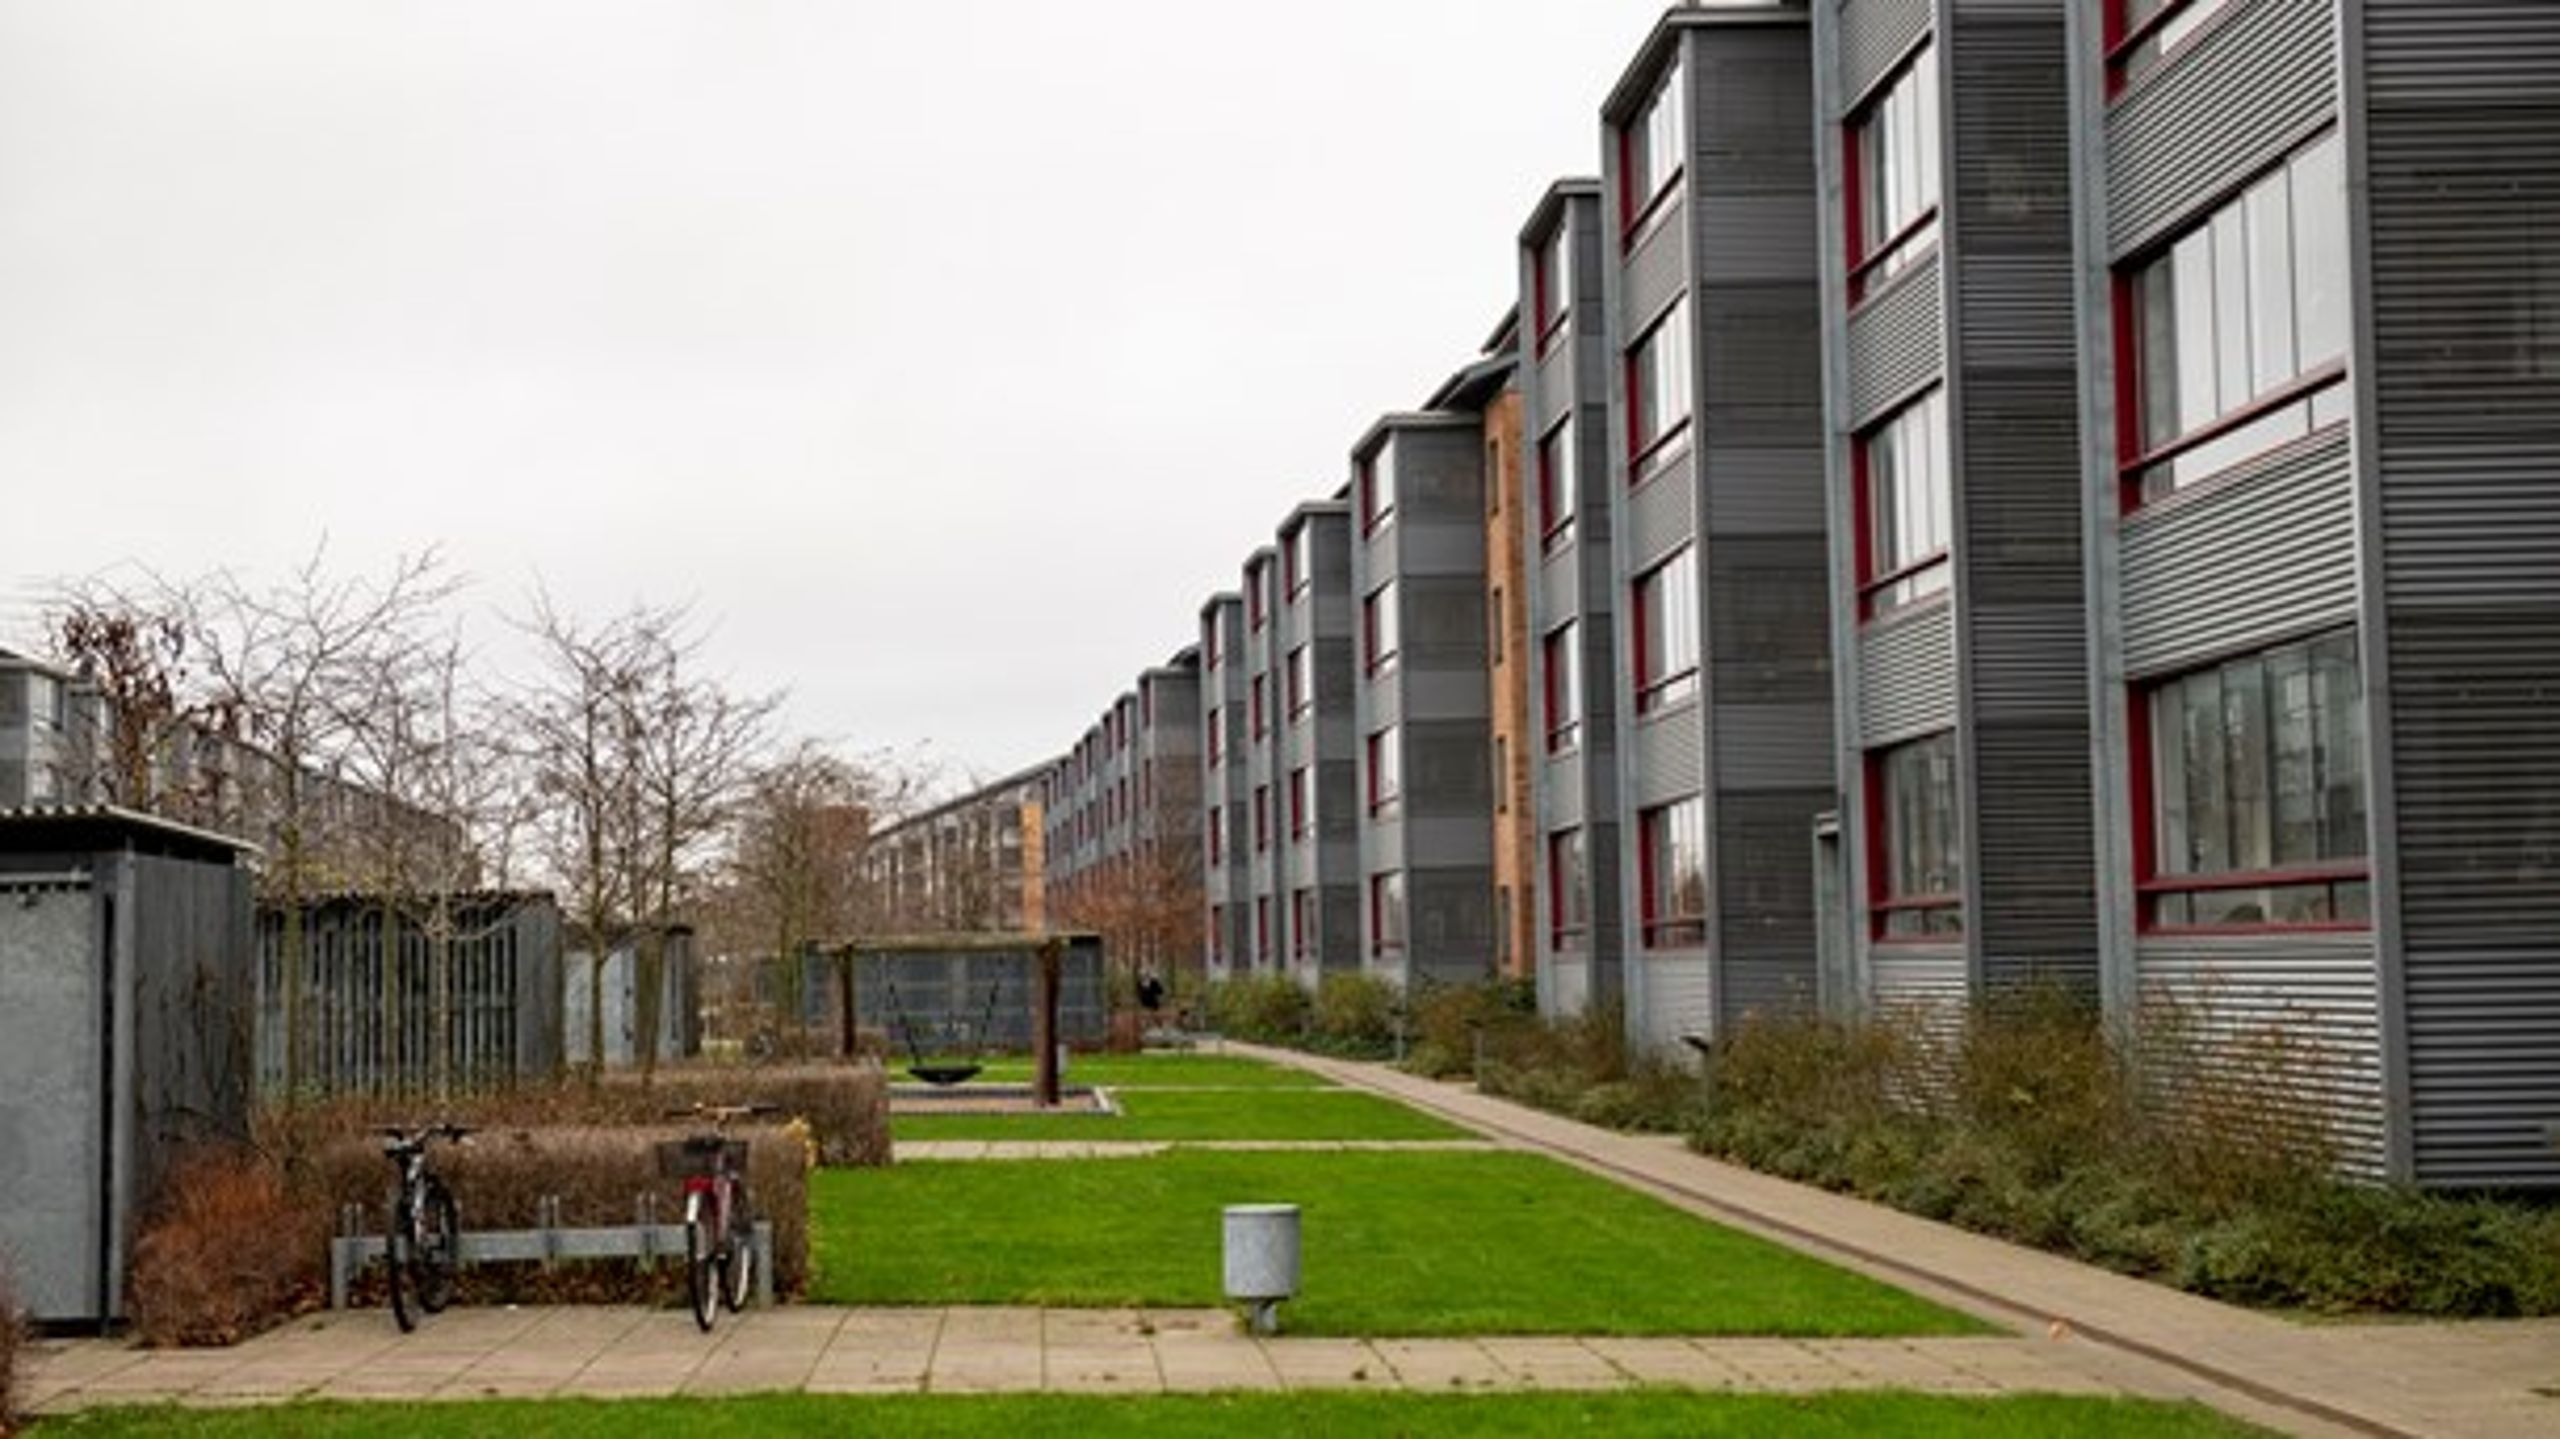 Lejere i hovedstadens almene boliger udløser ifølge seks østjyske kommuner for stor socialt udligningstilskud. Vejleåparken her ligger i Ishøj Kommune, og der er borgmesteren lodret uenig.